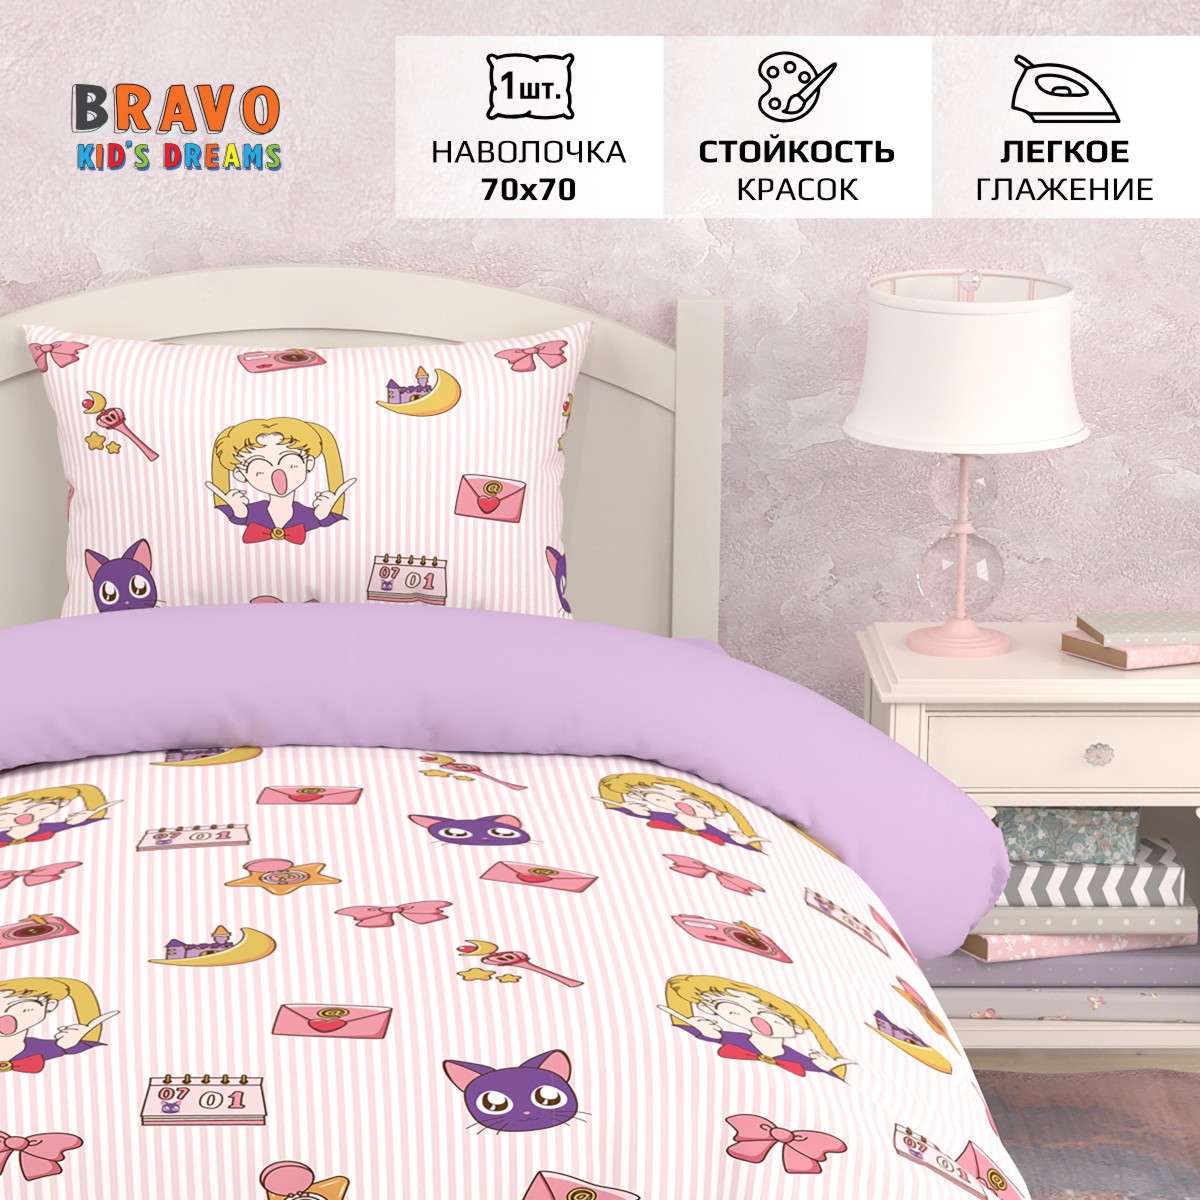 Комплект постельного белья BRAVO kids dreams Аниме 1.5 спальный 3 предмета - фото 2